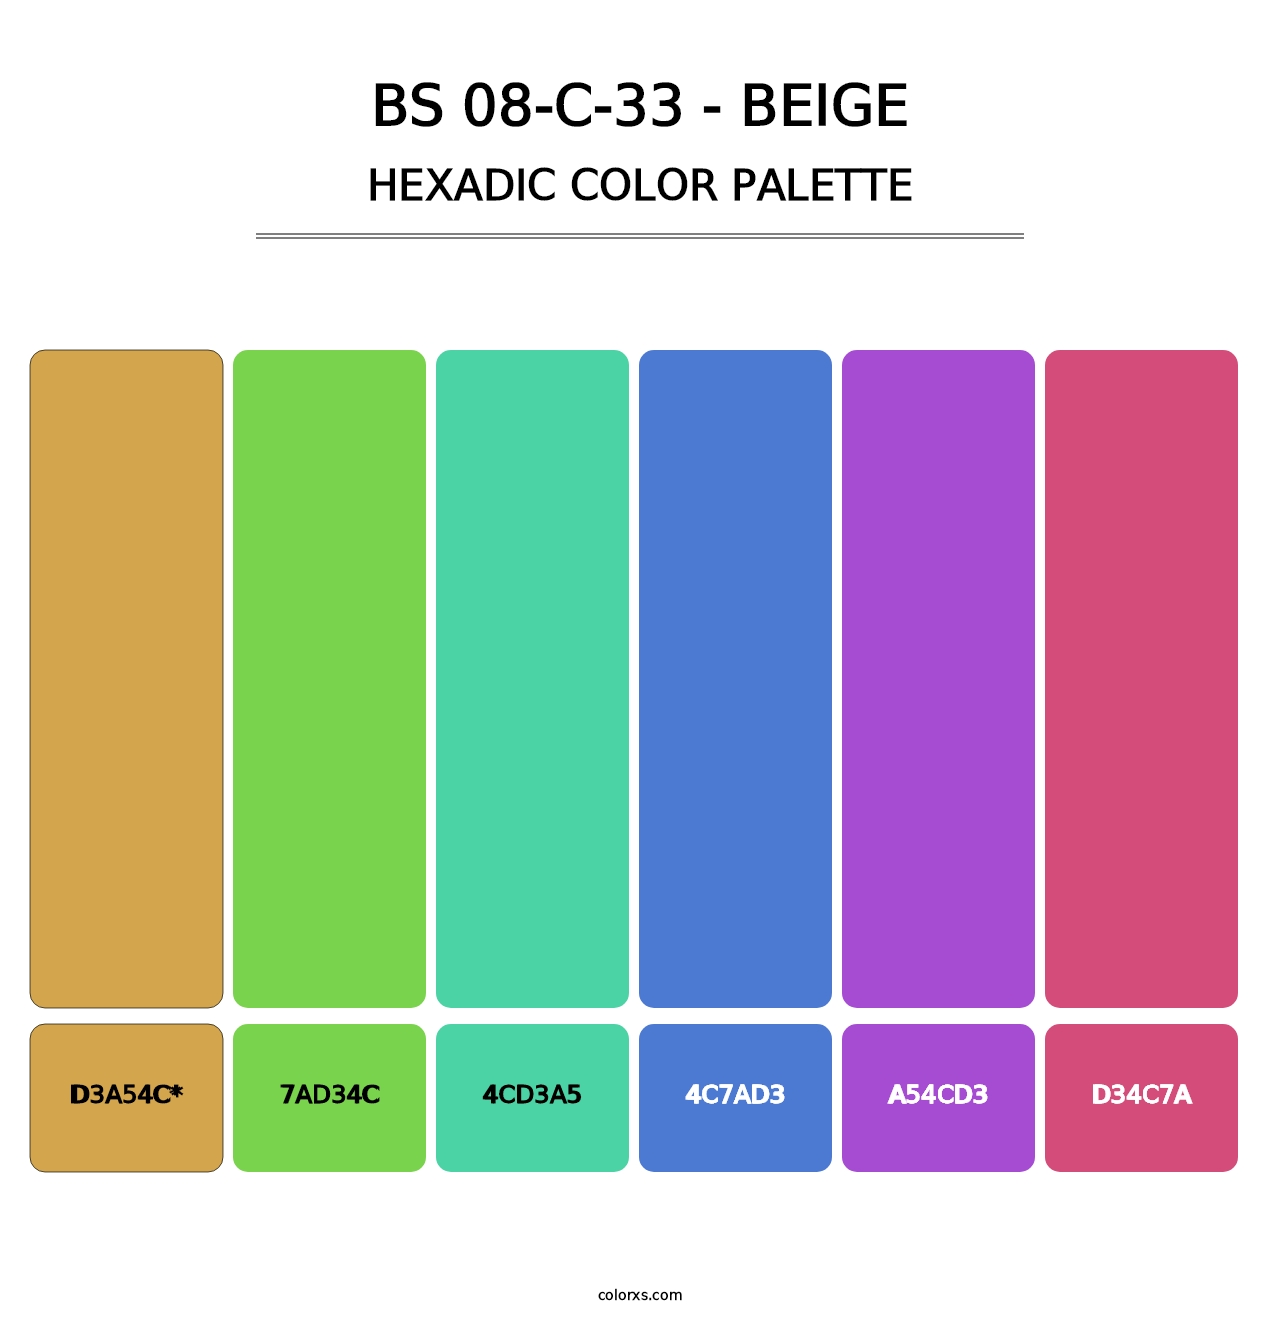 BS 08-C-33 - Beige - Hexadic Color Palette